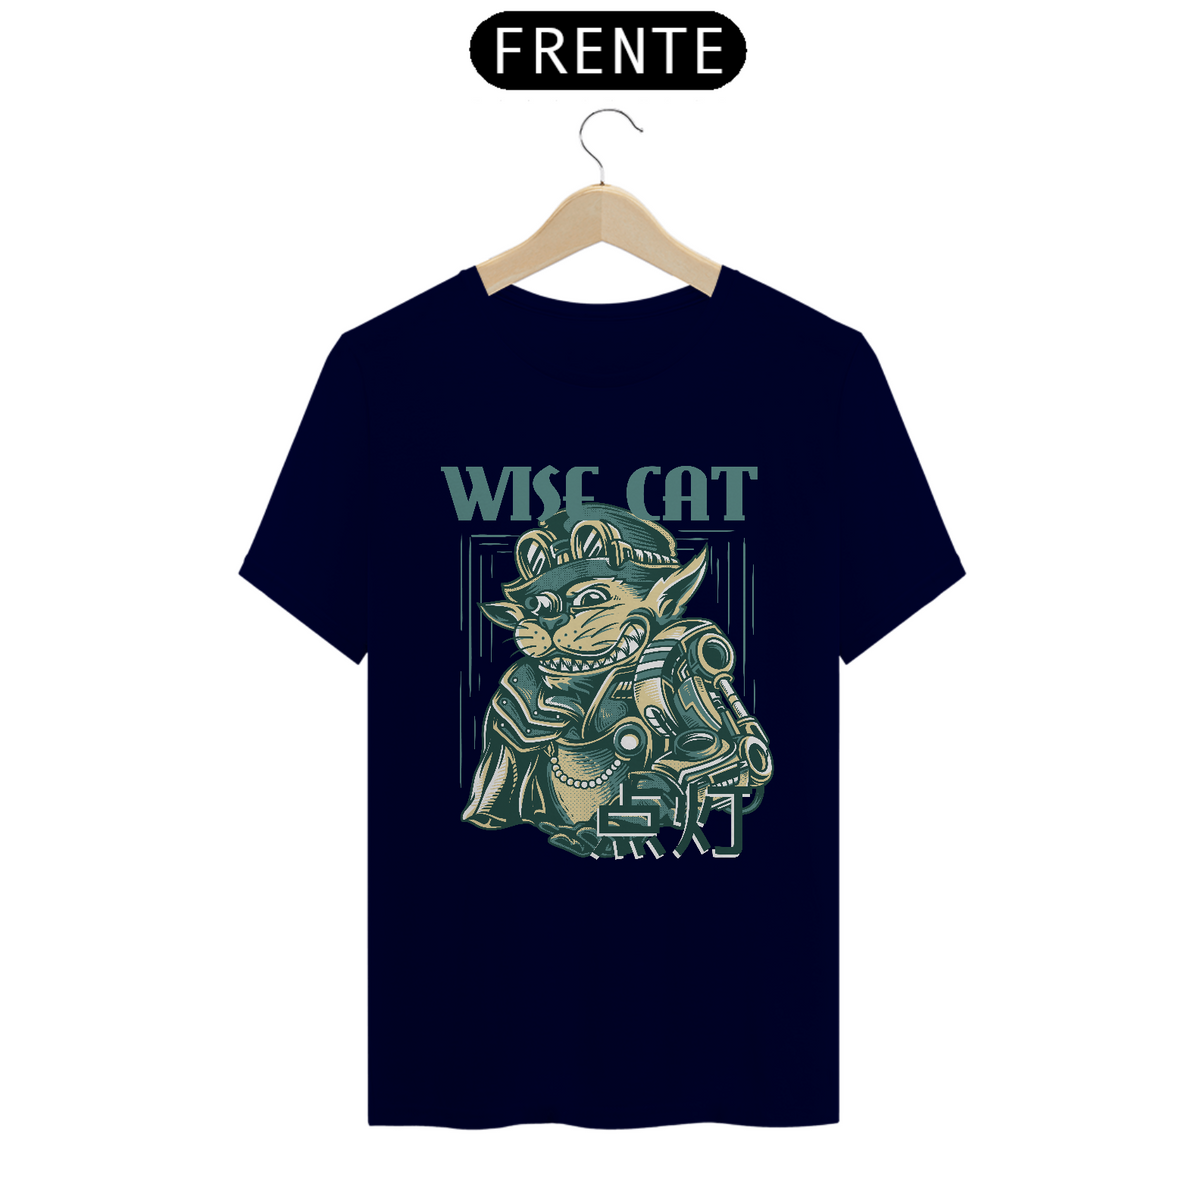 Nome do produto: Camiseta Wise Cat